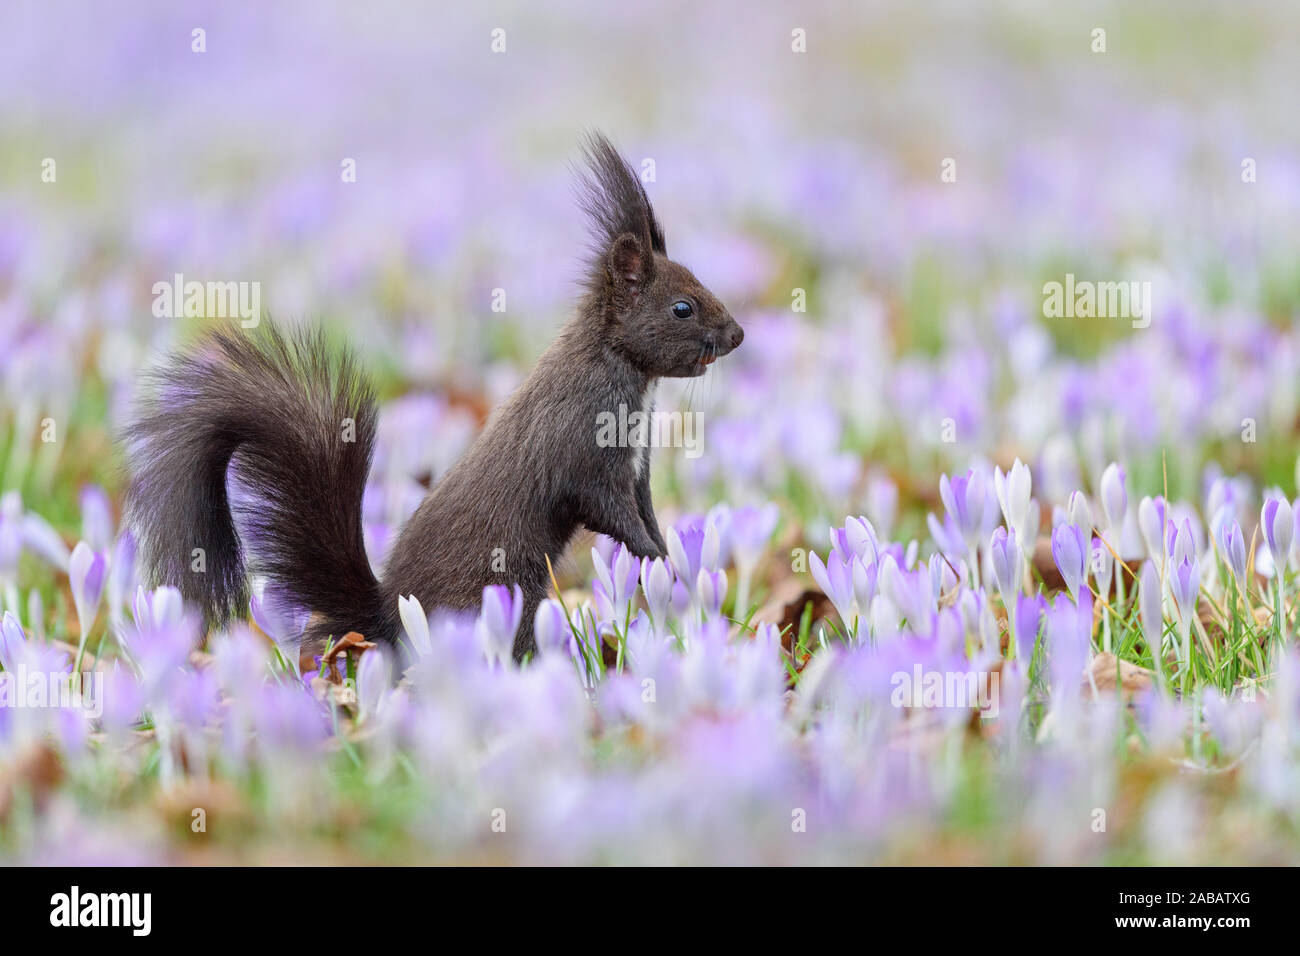 Dunkelbraunes Eichhörnchen sitzt zwischen Frühlings-Krokus, Sciurus vulgaris, Stock Photo